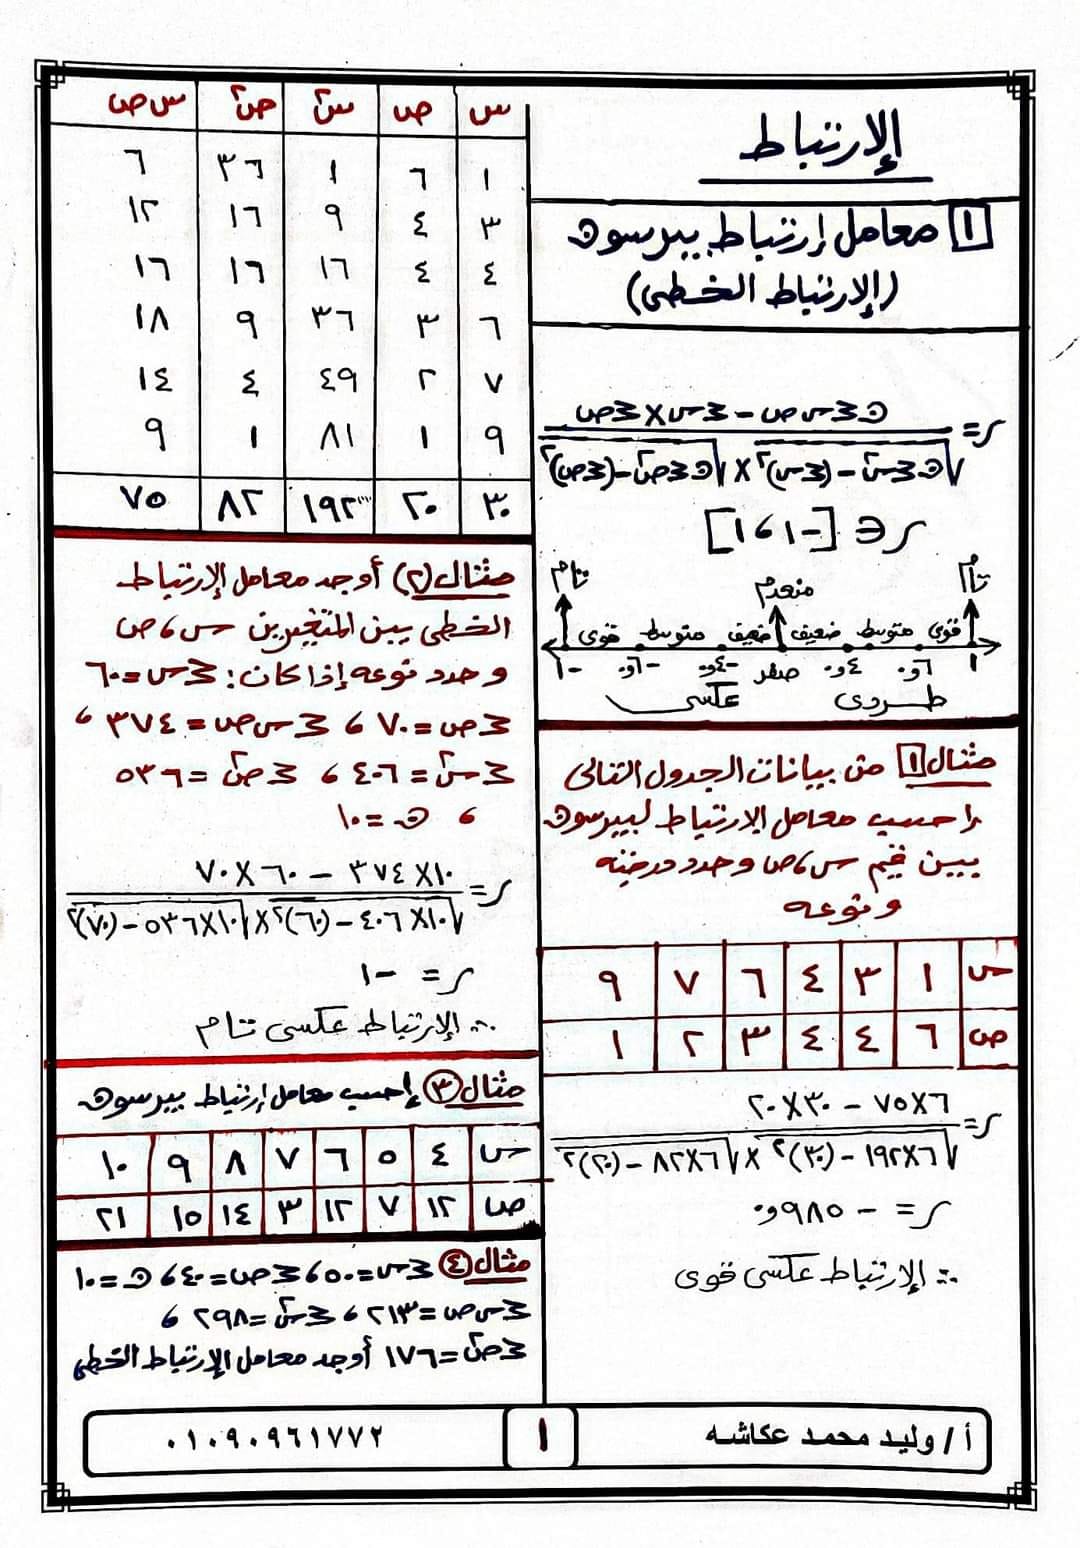 مراجعة نهائية ونموذج امتحان فى الاحصاء للصف الثالث الثانوي أ/ وليد محمد عكاشه	 مدرس دوت كوم